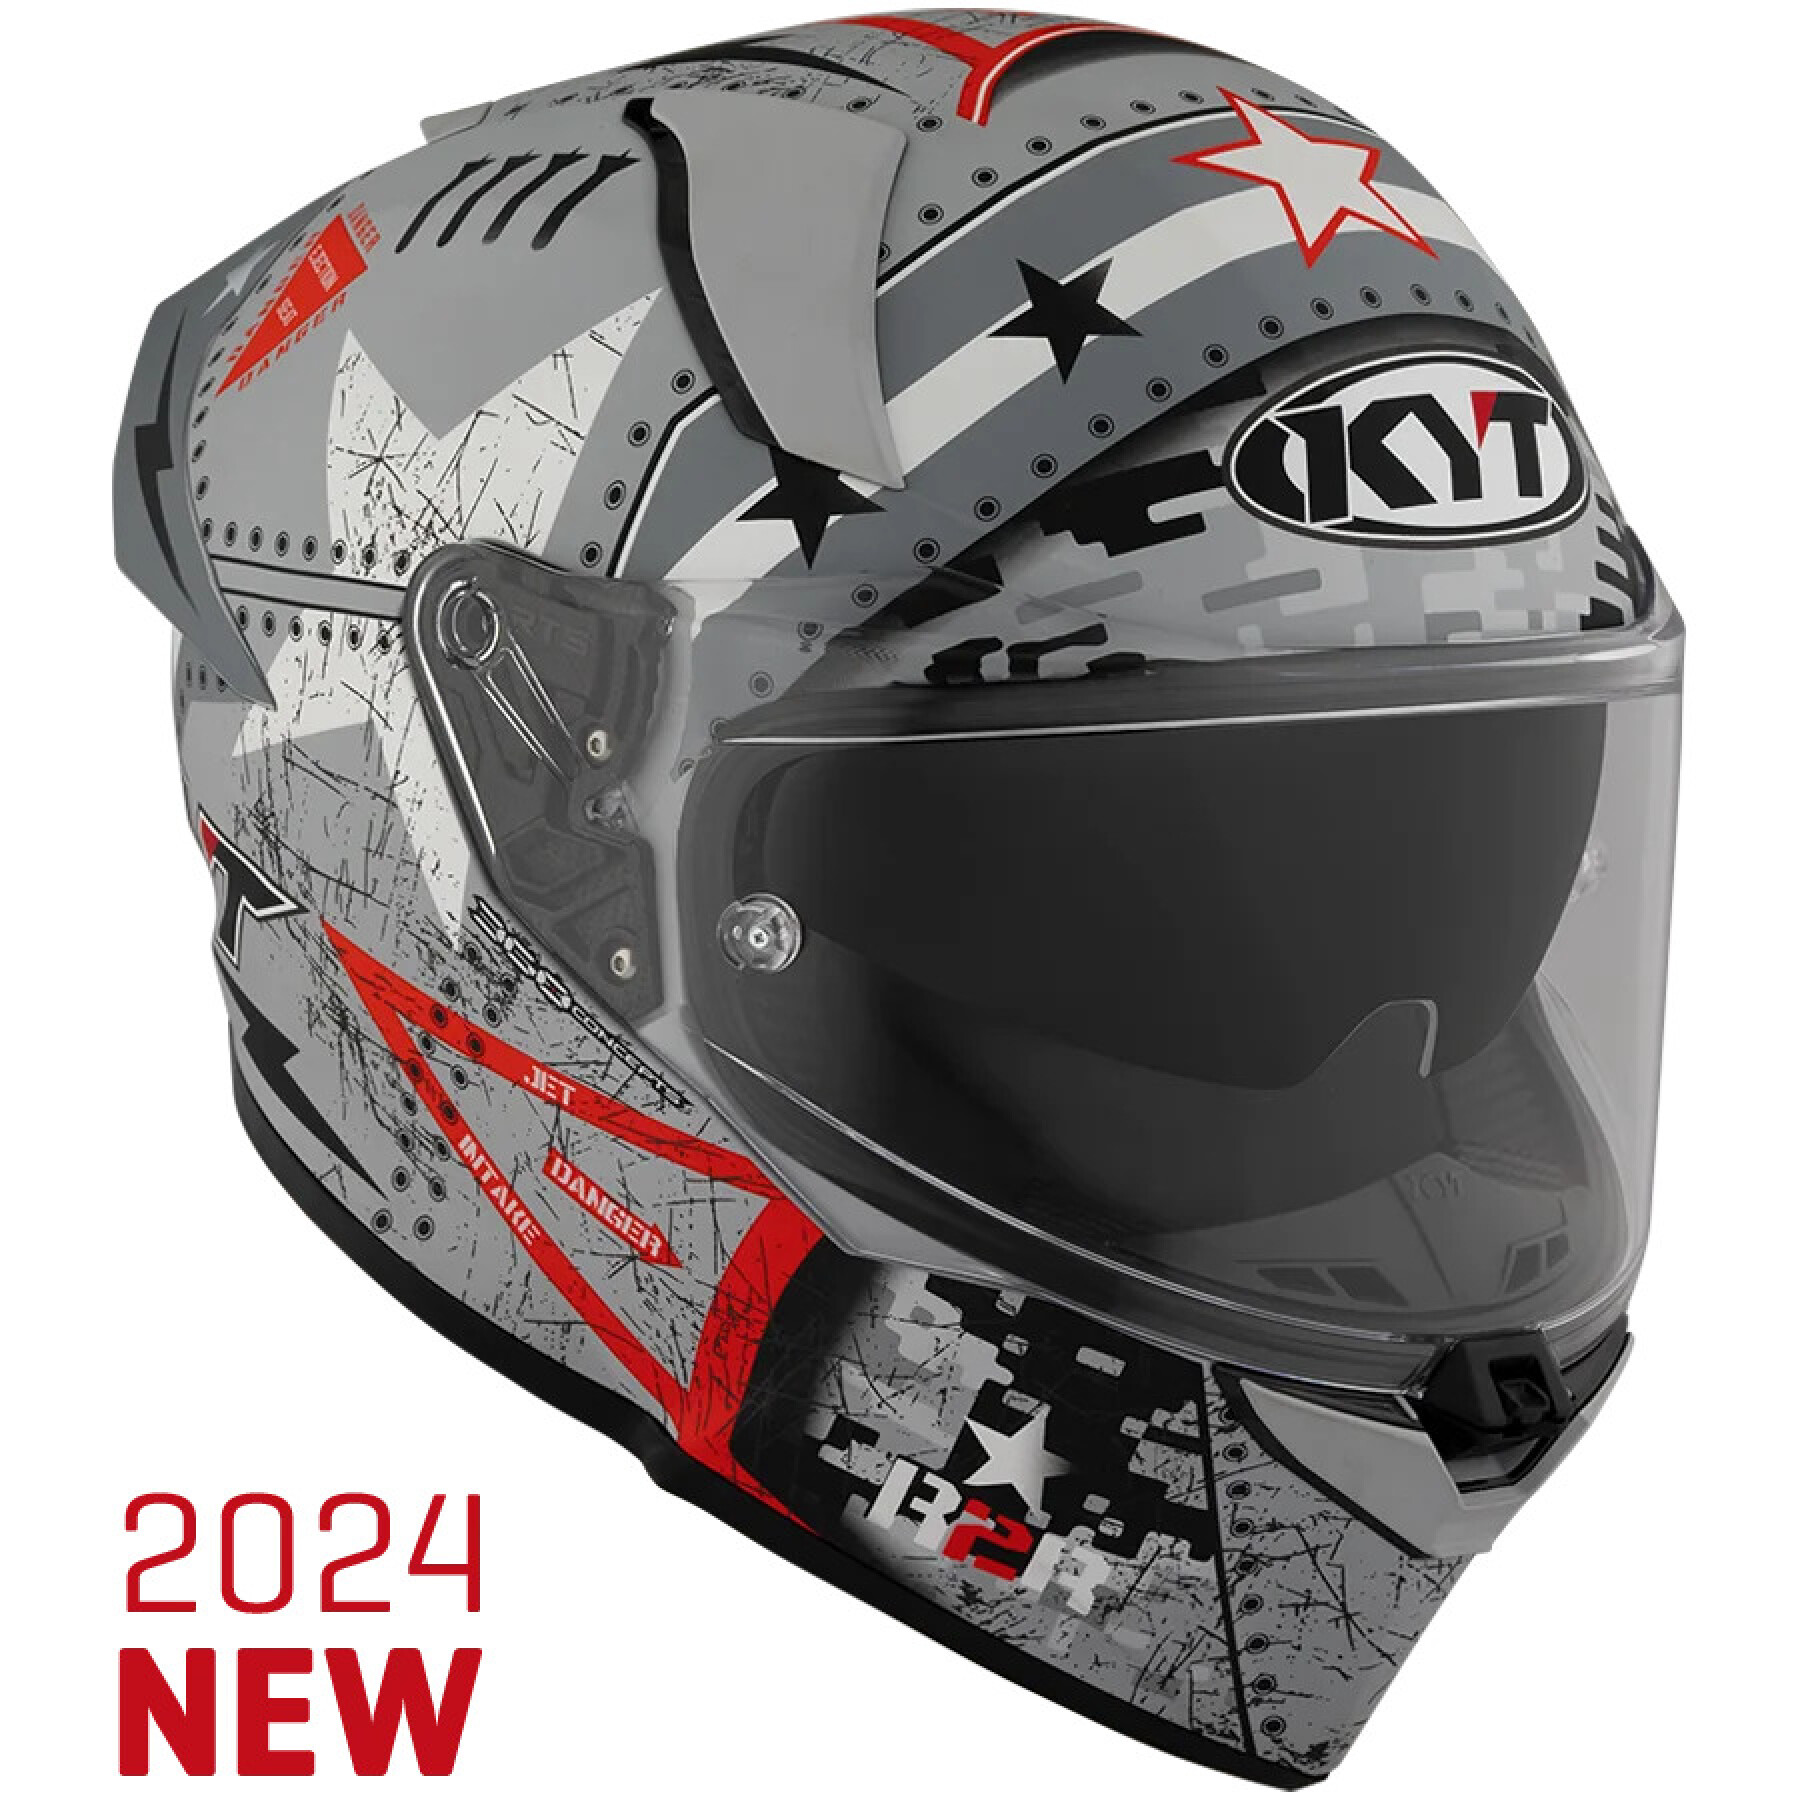 Full face motorcycle helmet Kyt R2R Max Assault